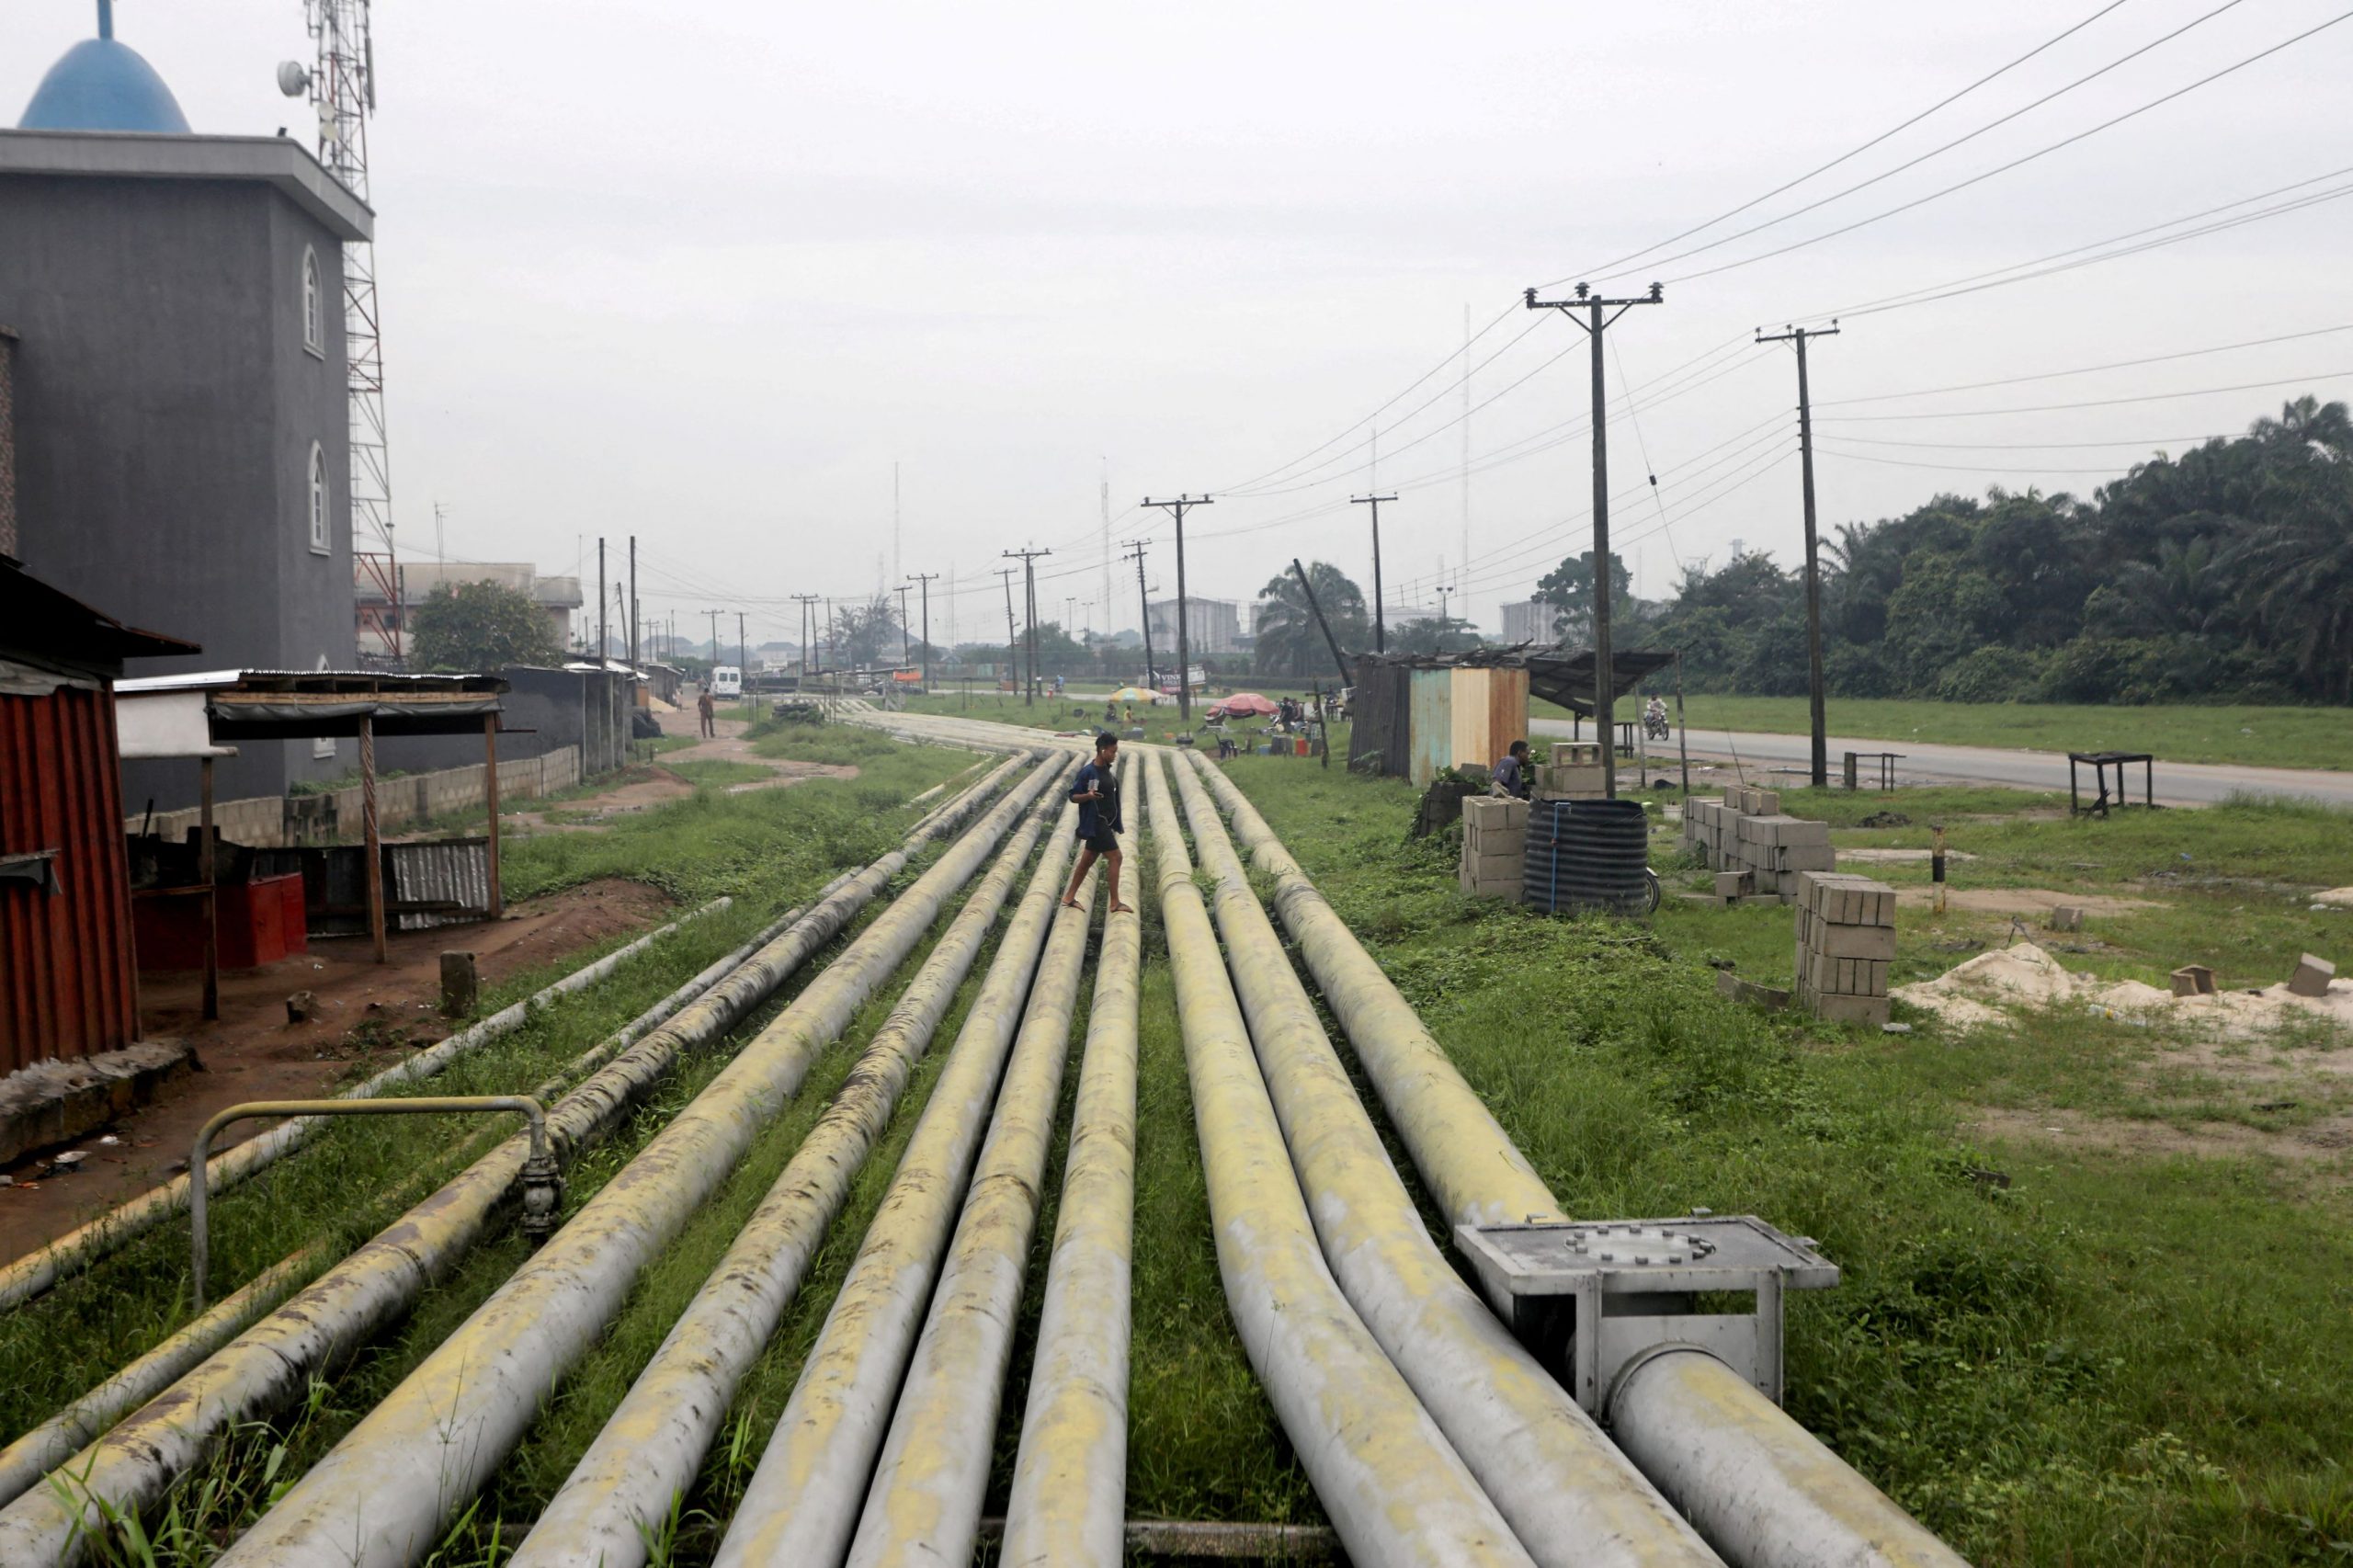 Νιγηρία: Επί 9 χρόνια έκλεβαν πετρέλαιο από εξαγωγικό τερματικό σταθμό